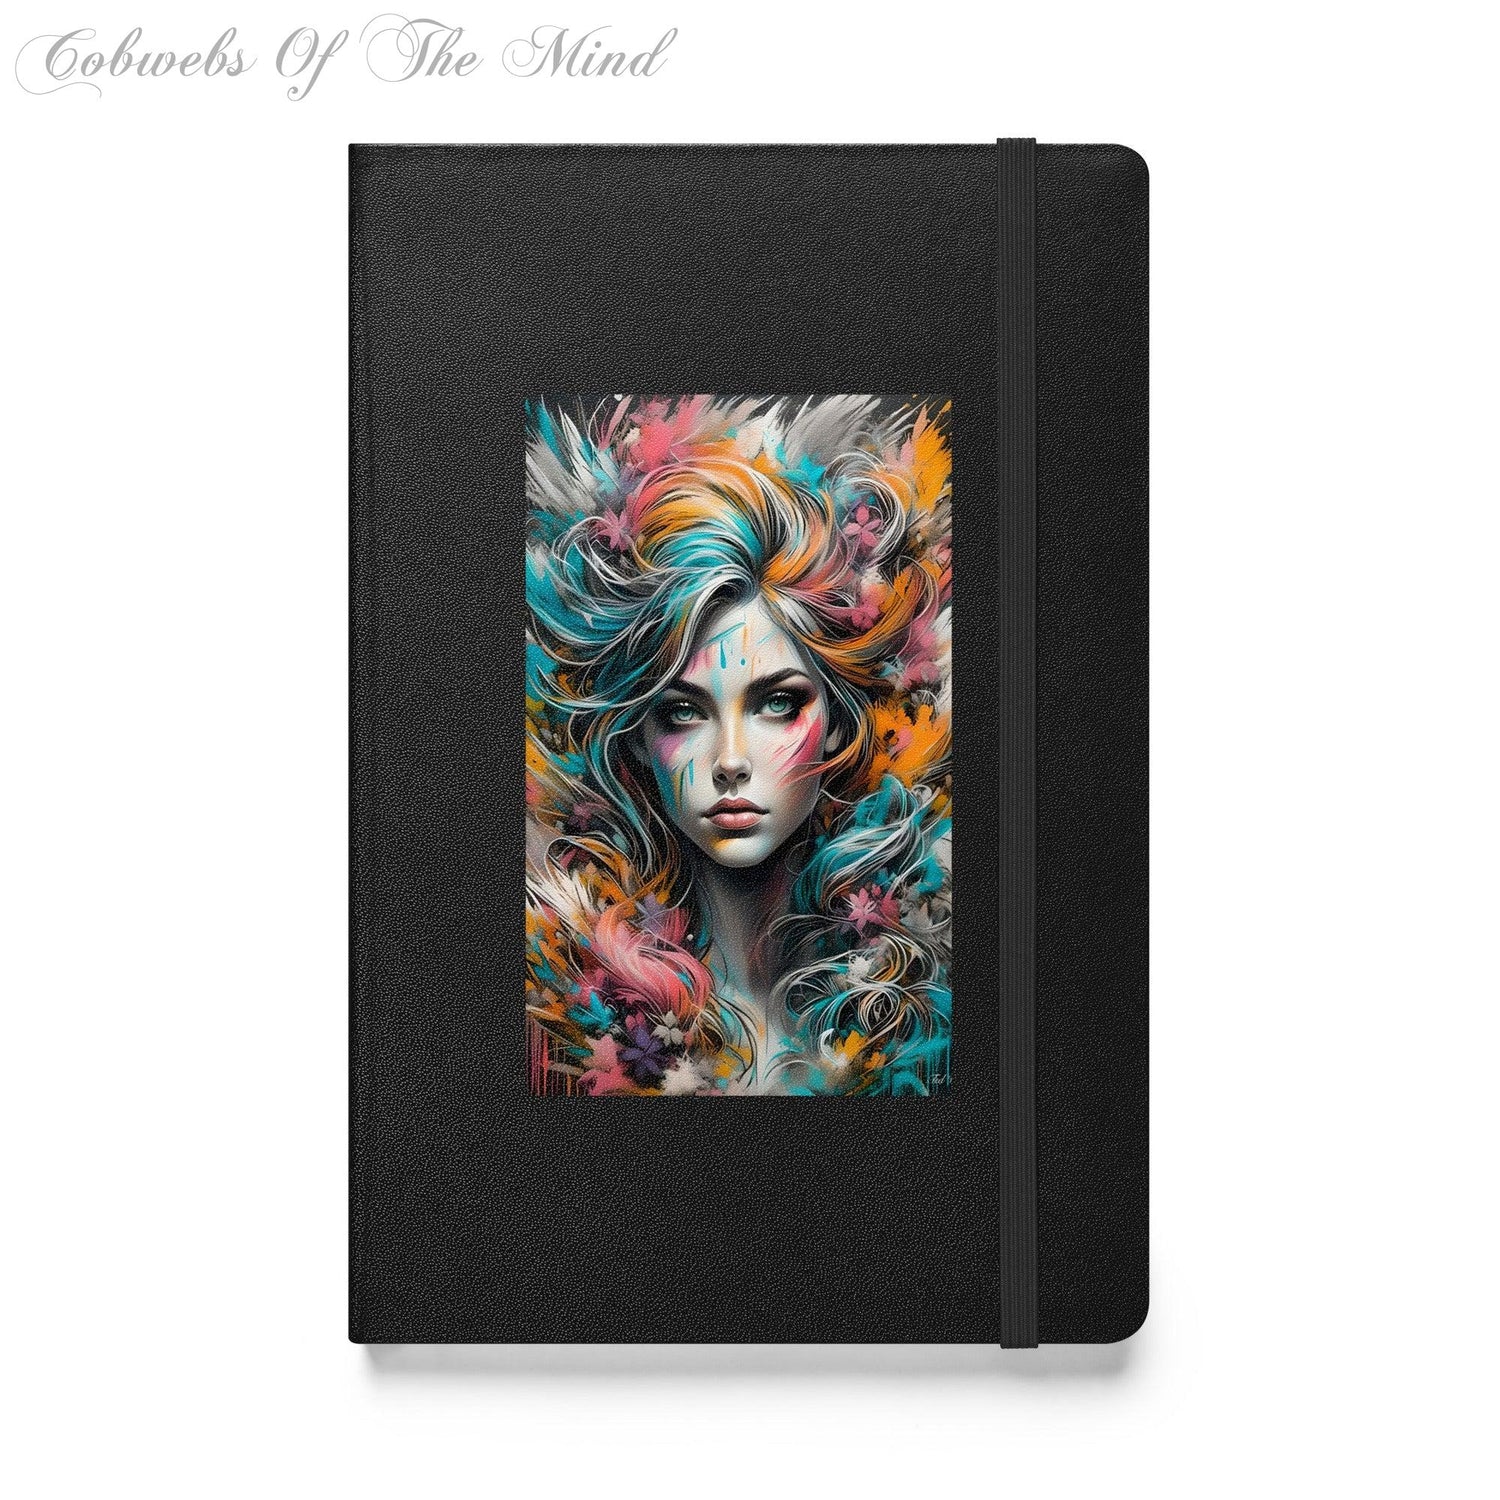 Elegant Hardcover Journal Notebook - Cobwebs Of The Mind 